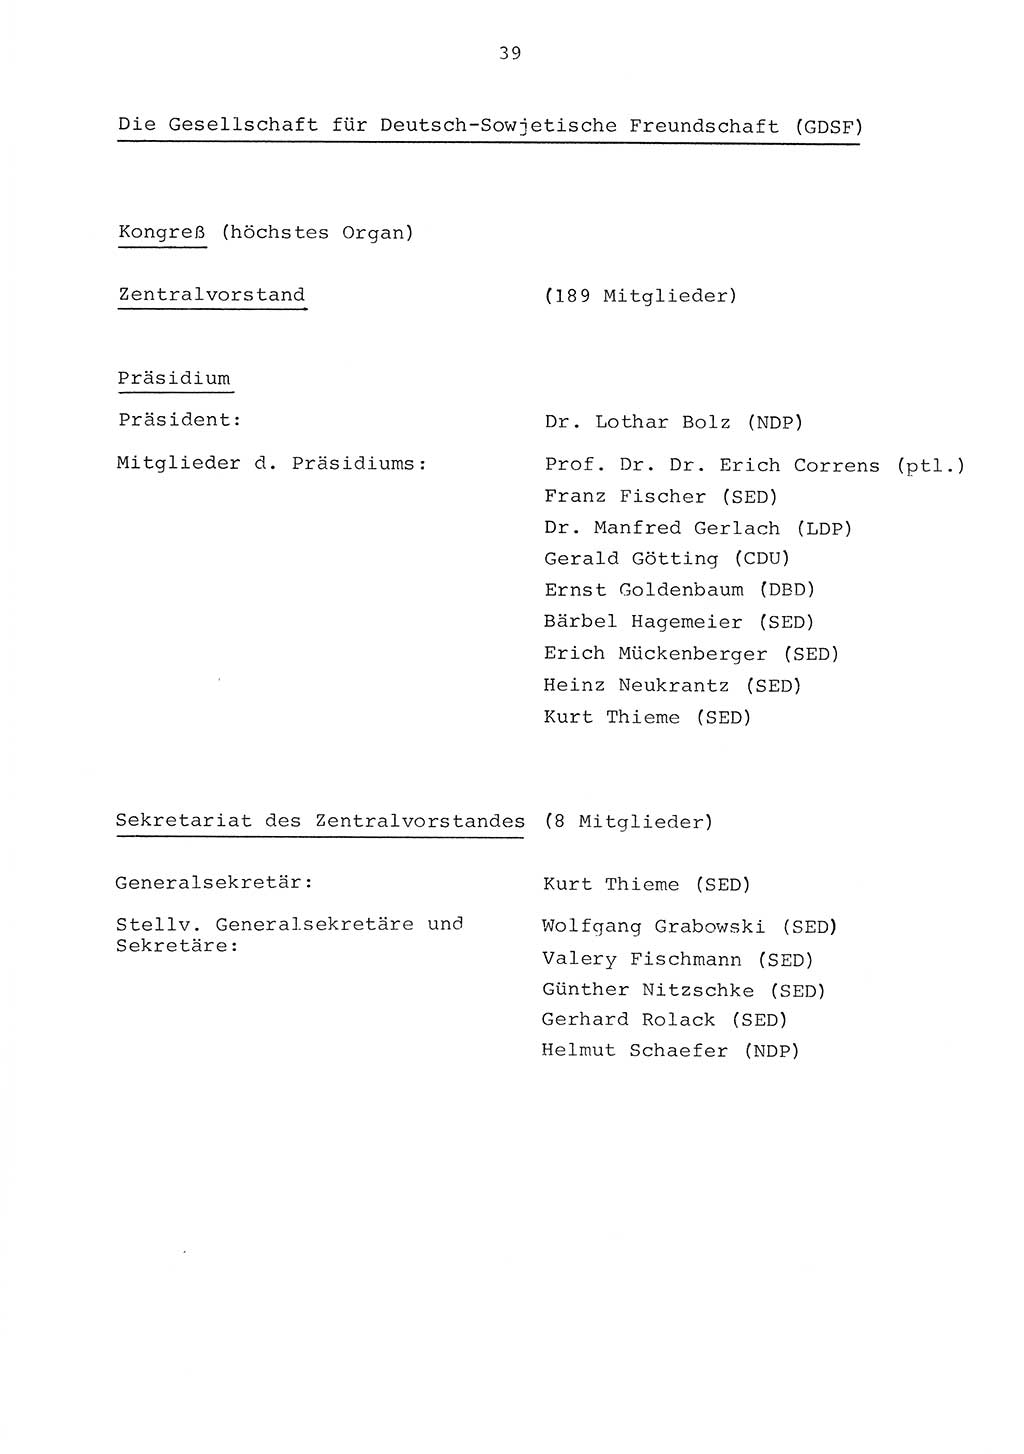 Parteiapparat der Deutschen Demokratischen Republik (DDR) 1970, Seite 39 (Parteiapp. DDR 1970, S. 39)